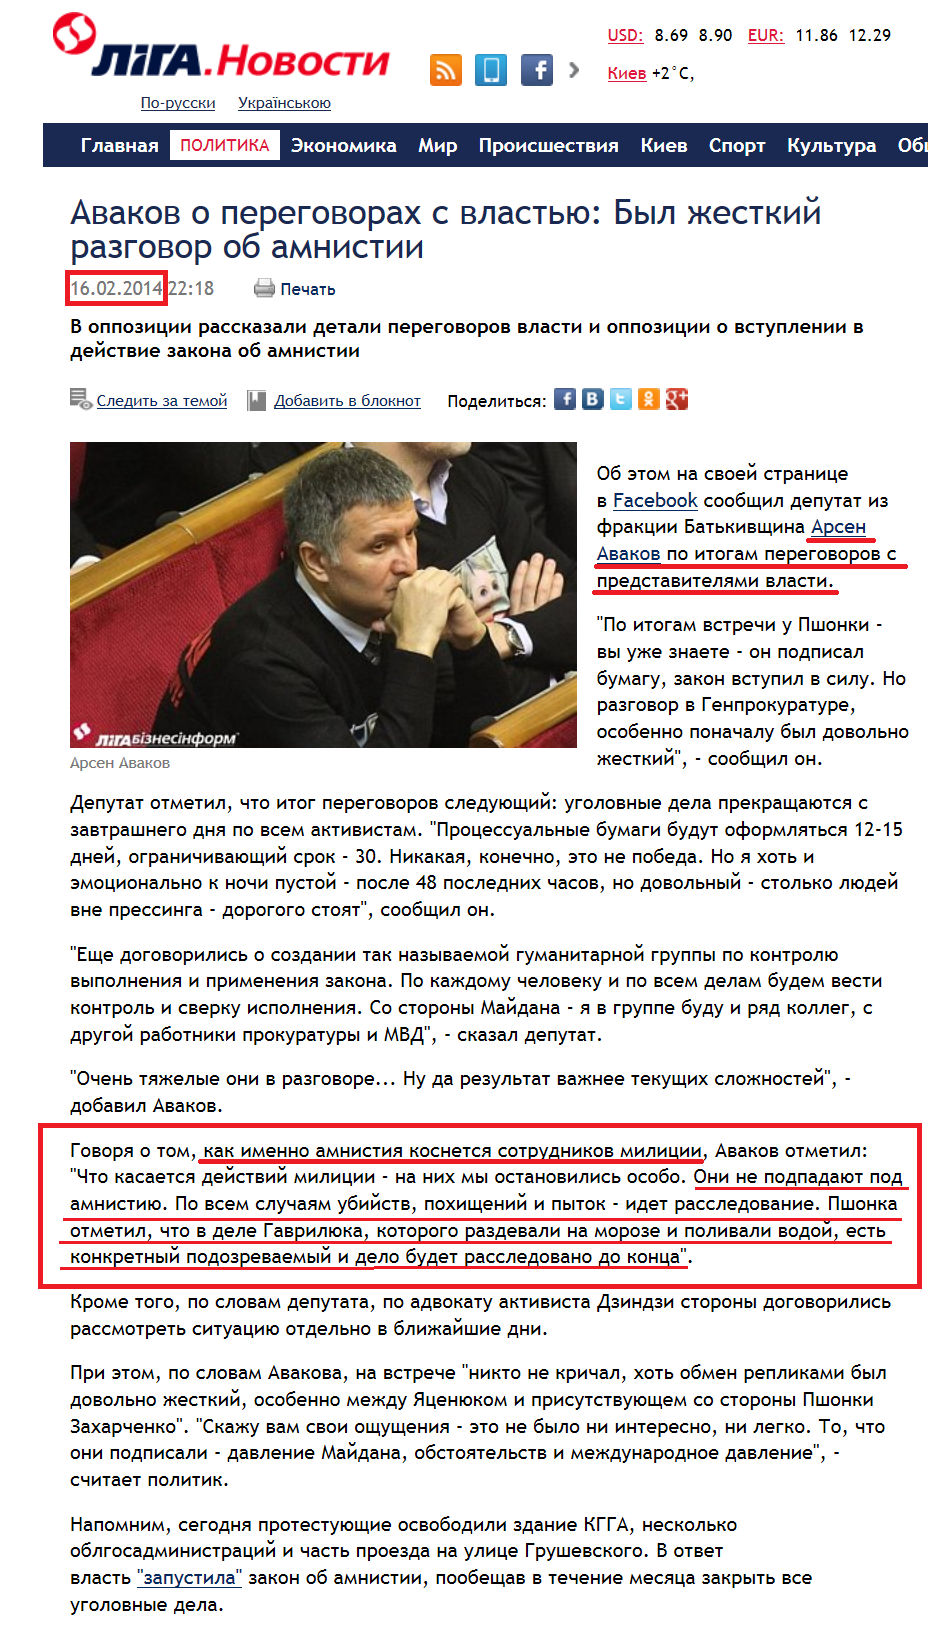 http://news.liga.net/news/politics/981221-avakov_o_peregovorakh_s_vlastyu_byl_zhestkiy_razgovor.htm